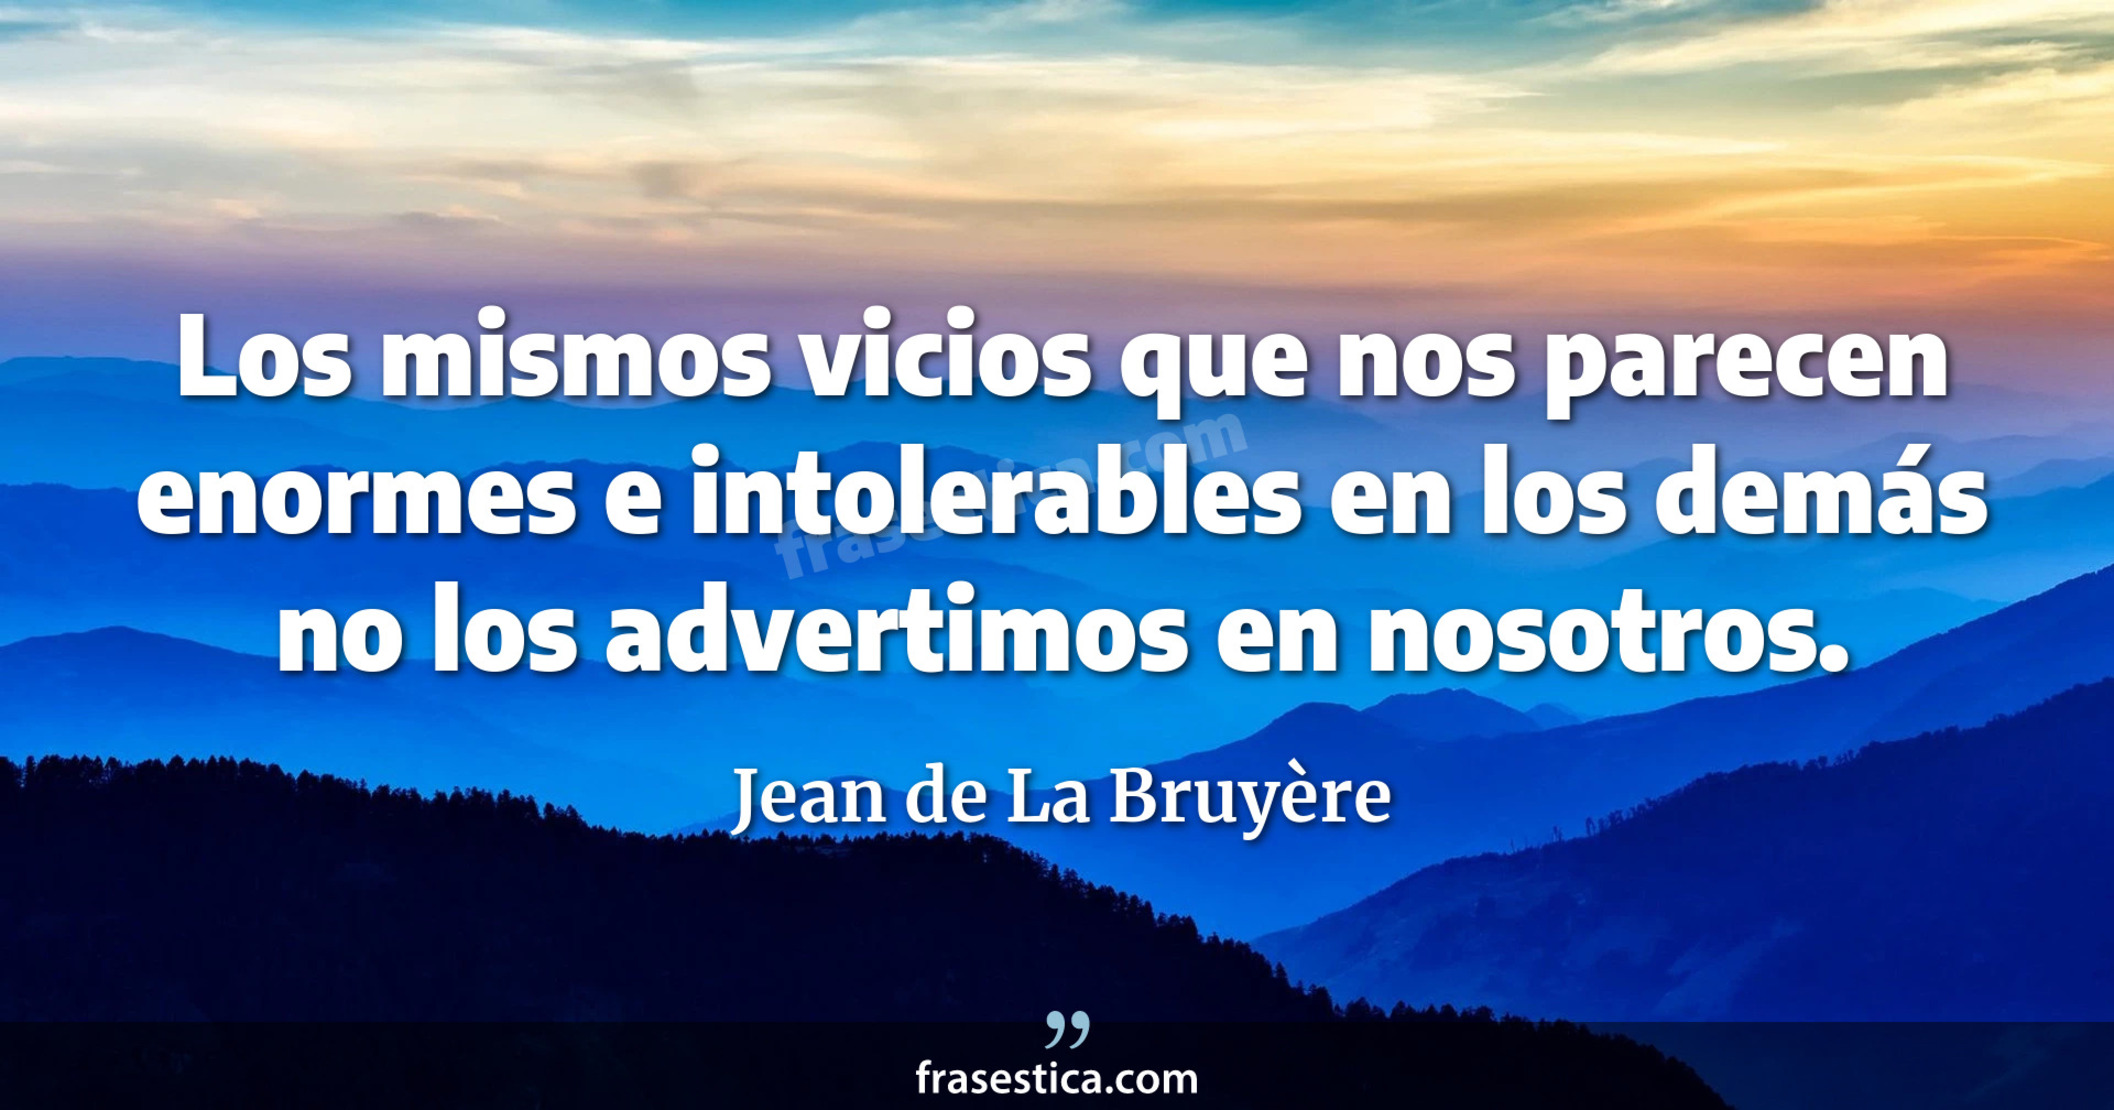 Los mismos vicios que nos parecen enormes e intolerables en los demás no los advertimos en nosotros. - Jean de La Bruyère